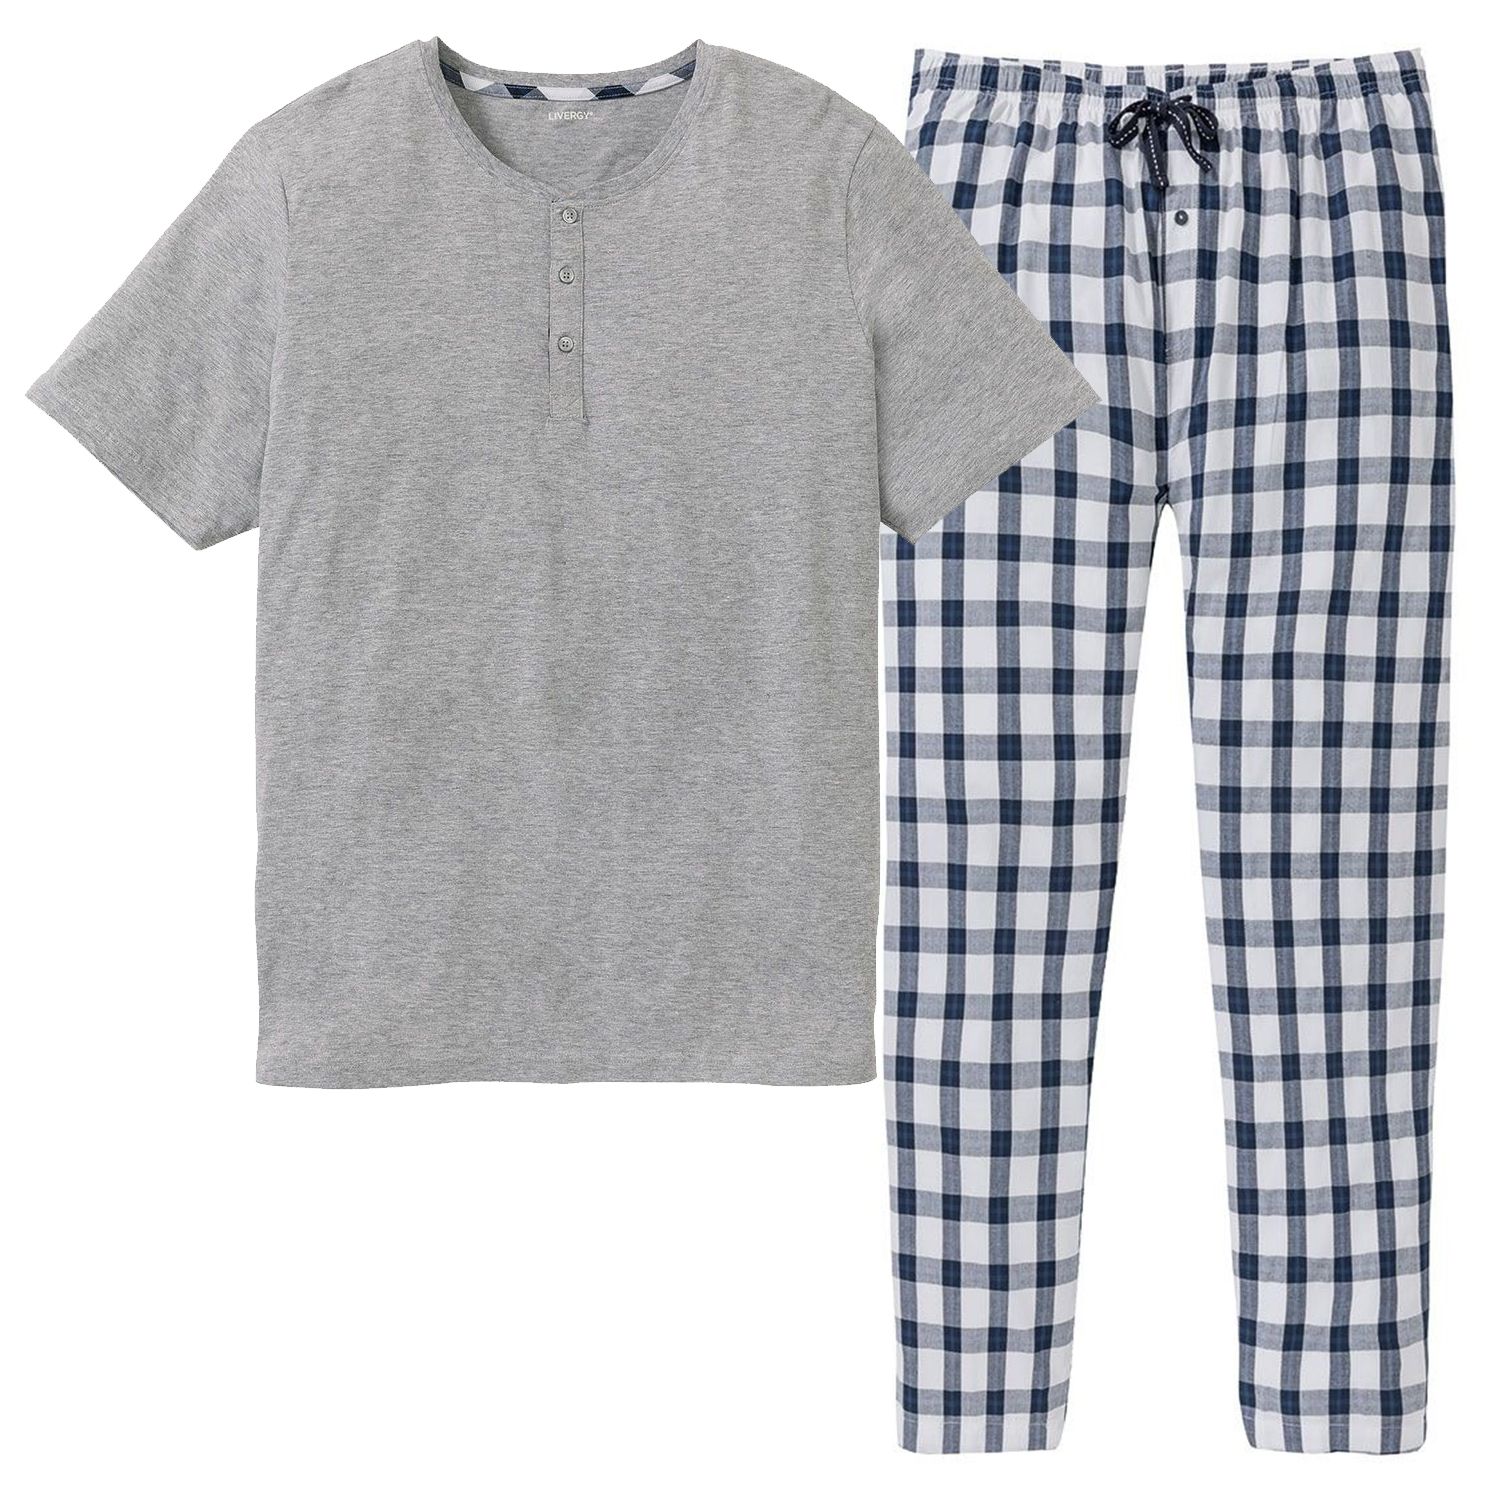 ست تی شرت و شلوار مردانه لیورجی مدل یکتا کد checkLux2022 رنگ طوسی